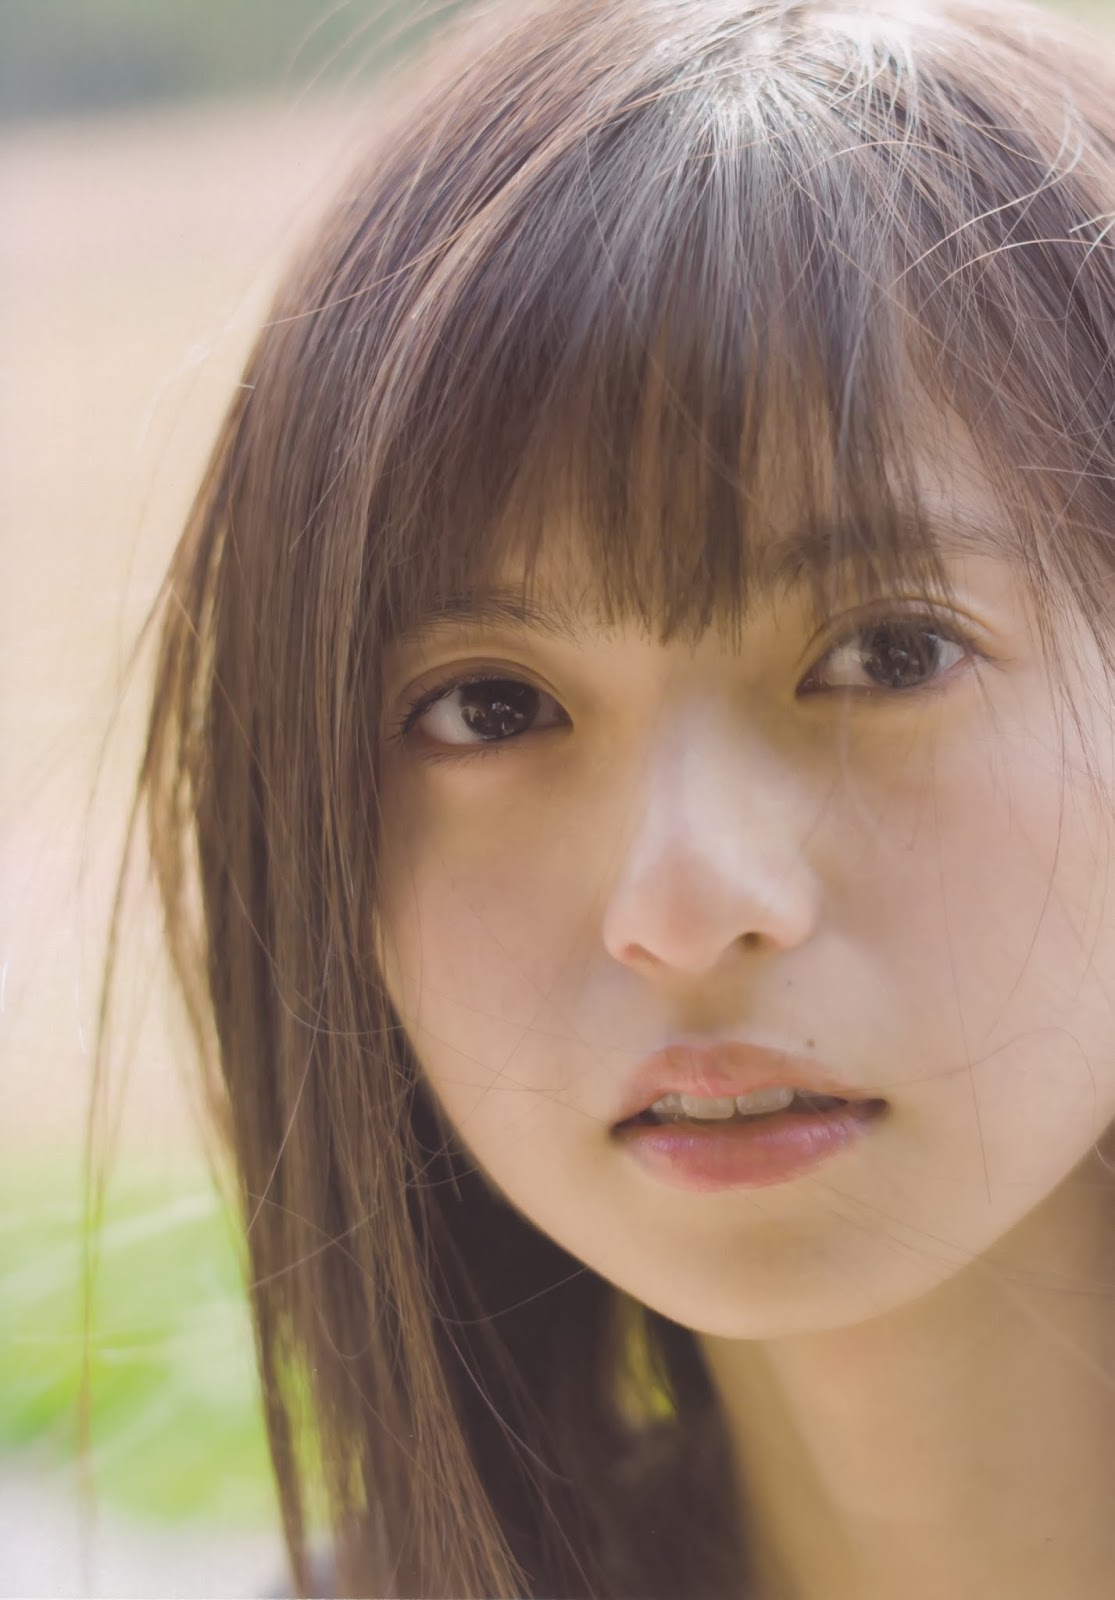 Nogizaka46: Asuka Saito "Shiosai" photobook scans part one.